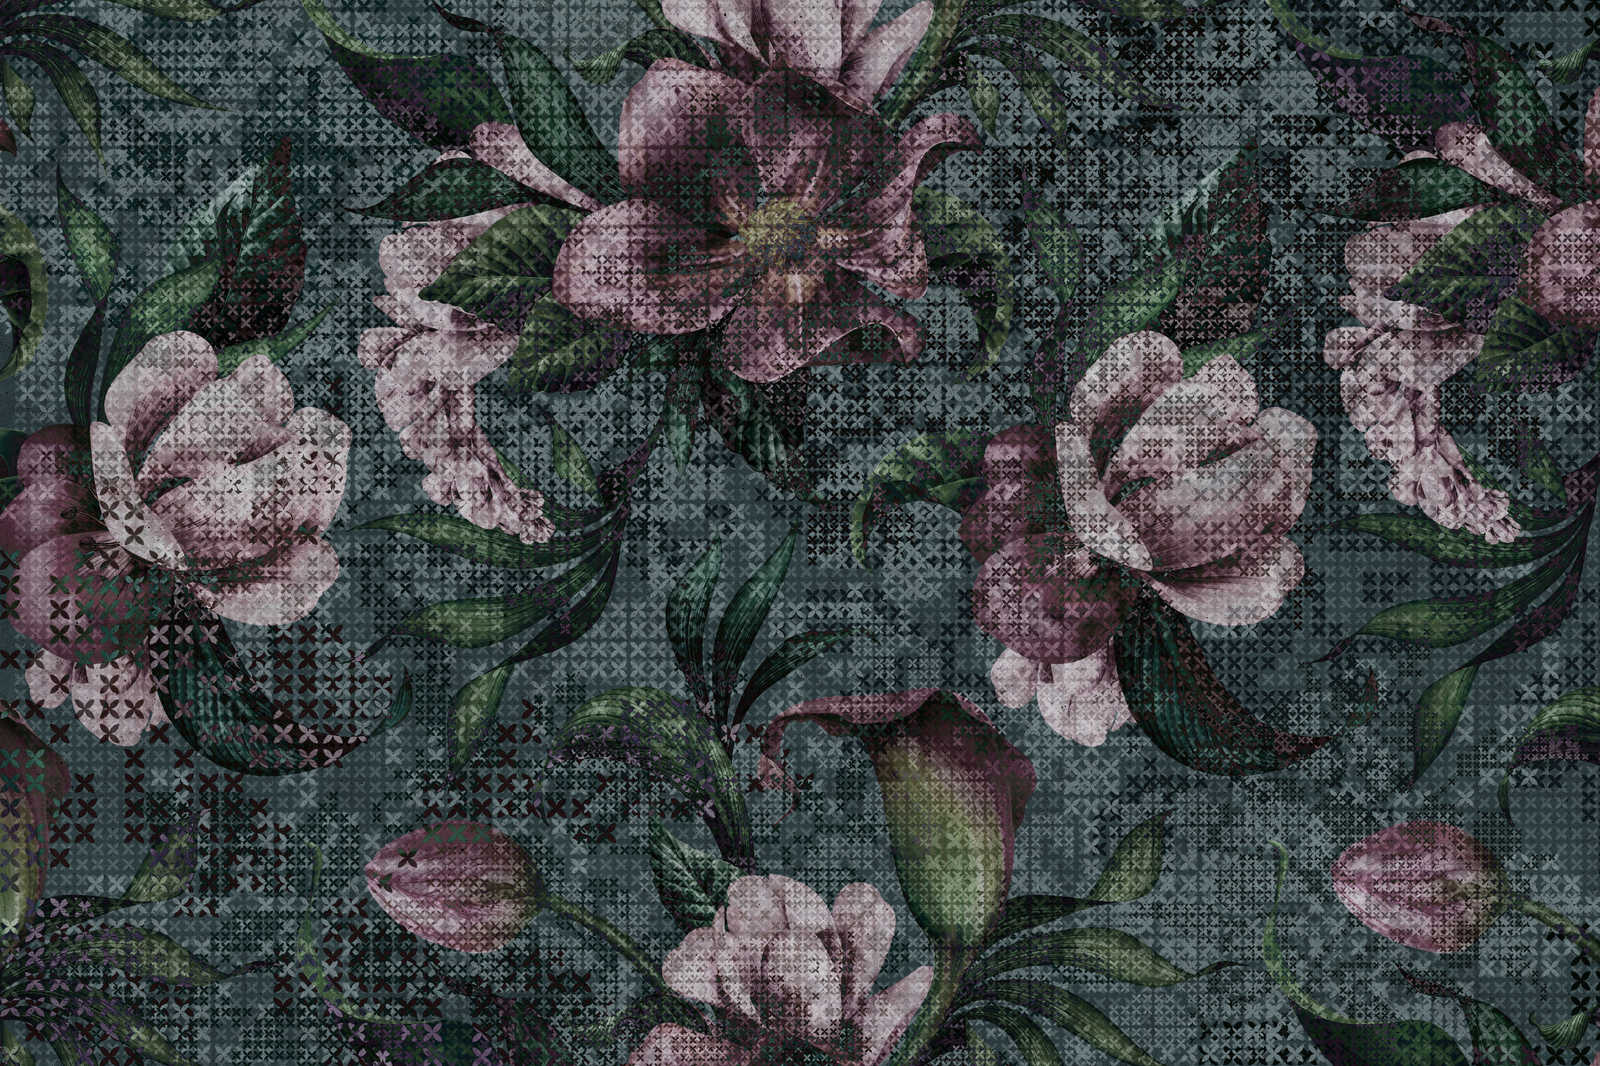             Flowers Canvas Painting Pixel Design - 1.20 m x 0.80 m
        